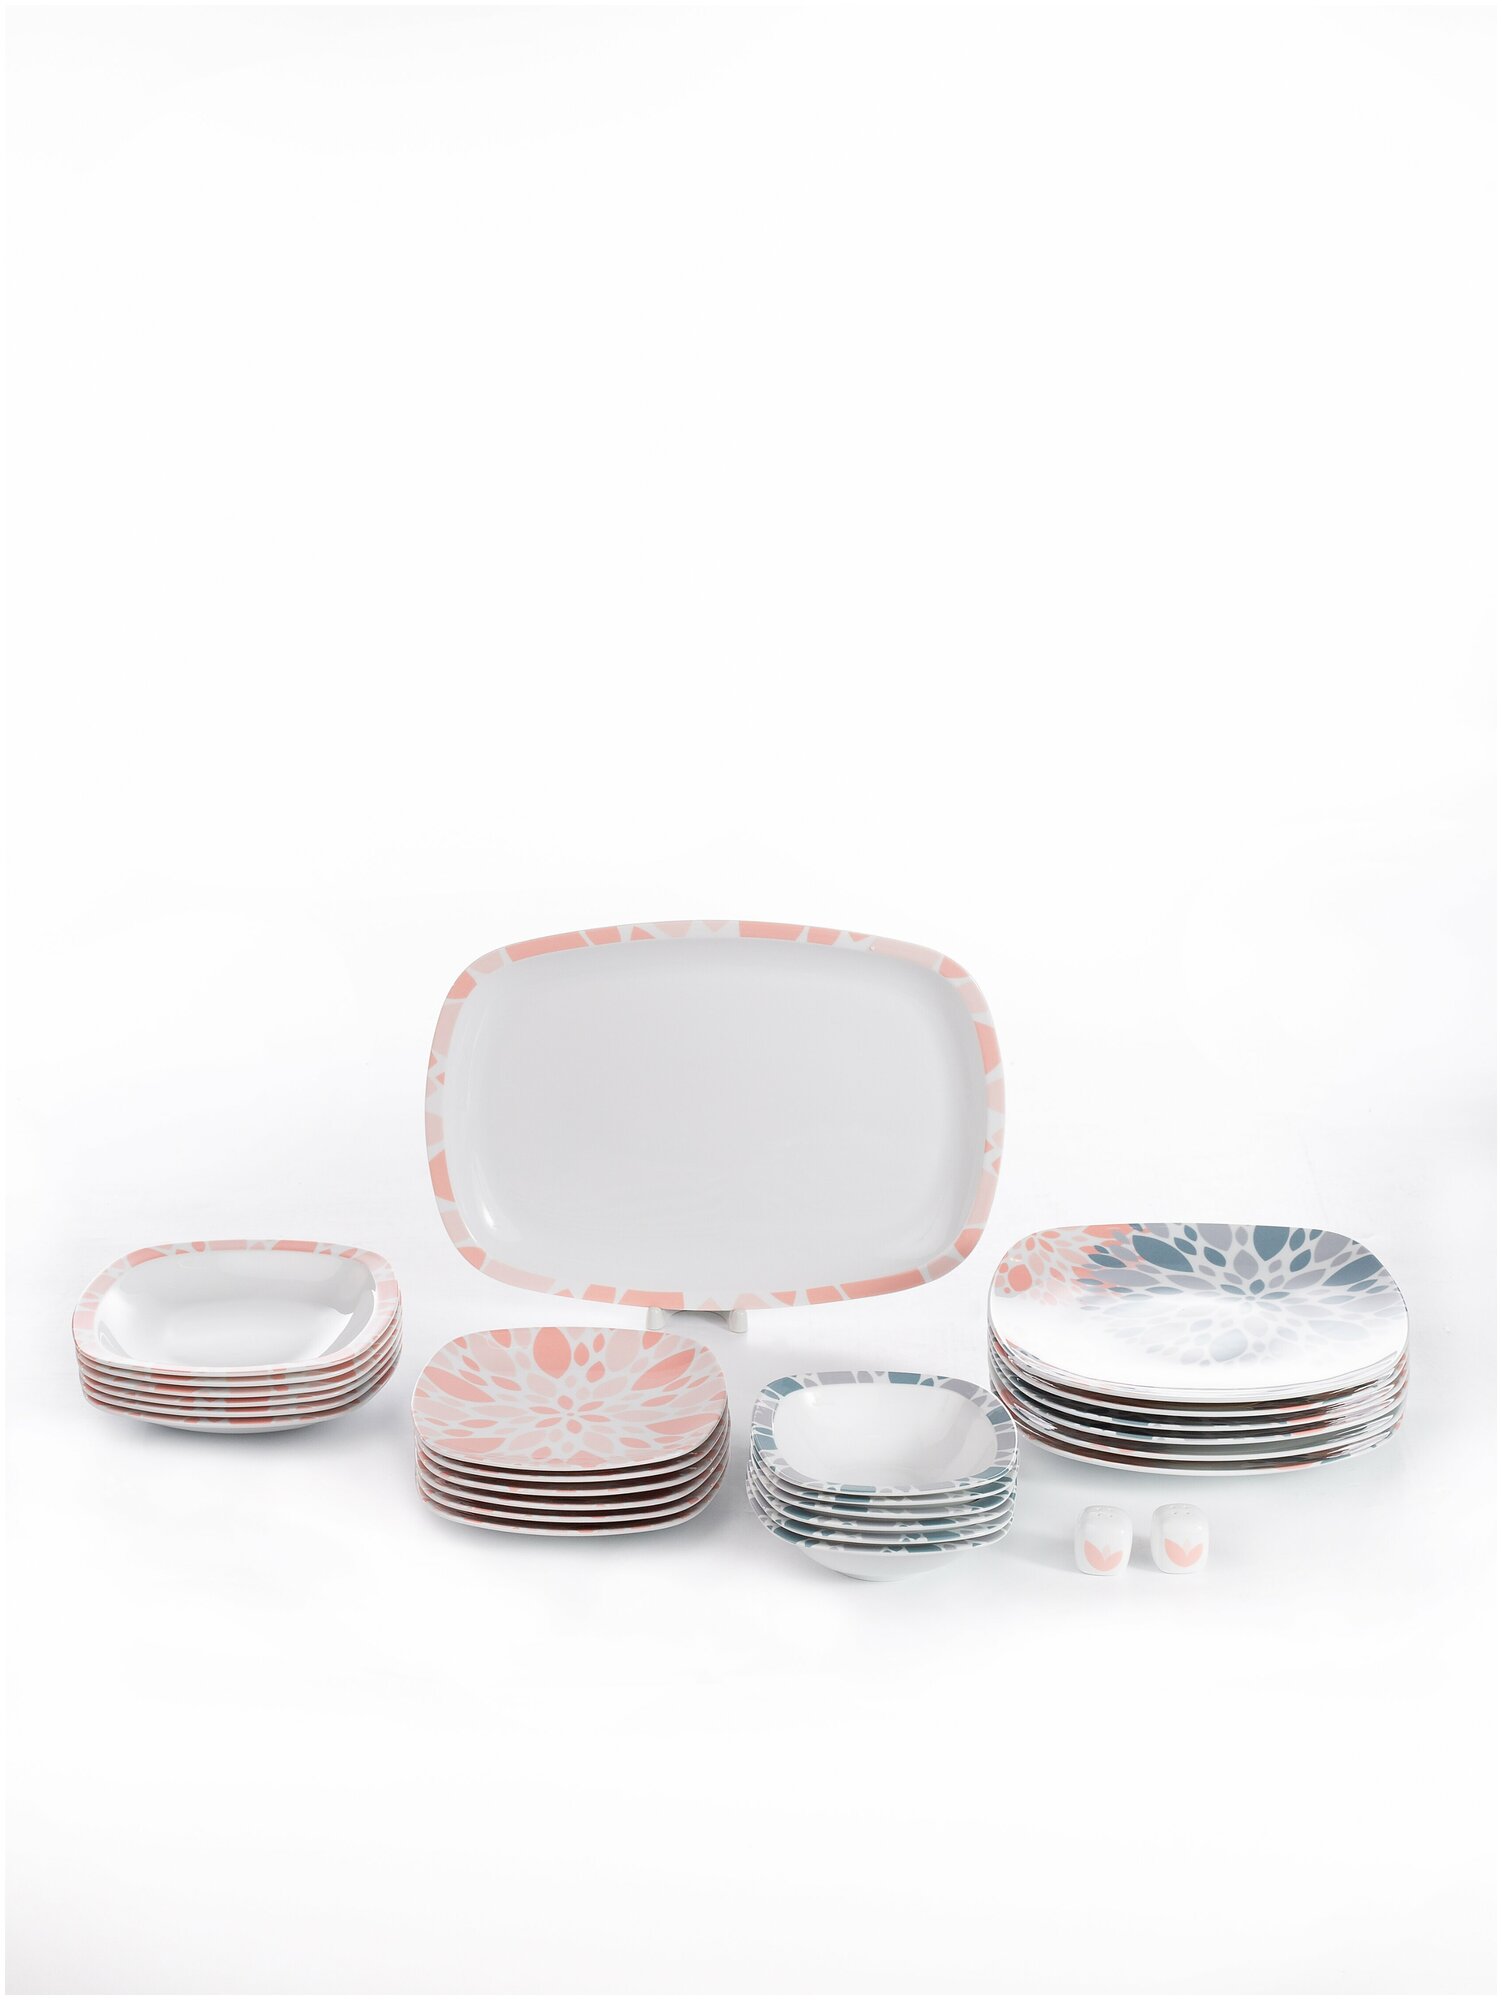 Сервиз столовый. Zarin Iran Porcelain Industries Co. Quattro, Selena Pink столовый набор 27 предметов.